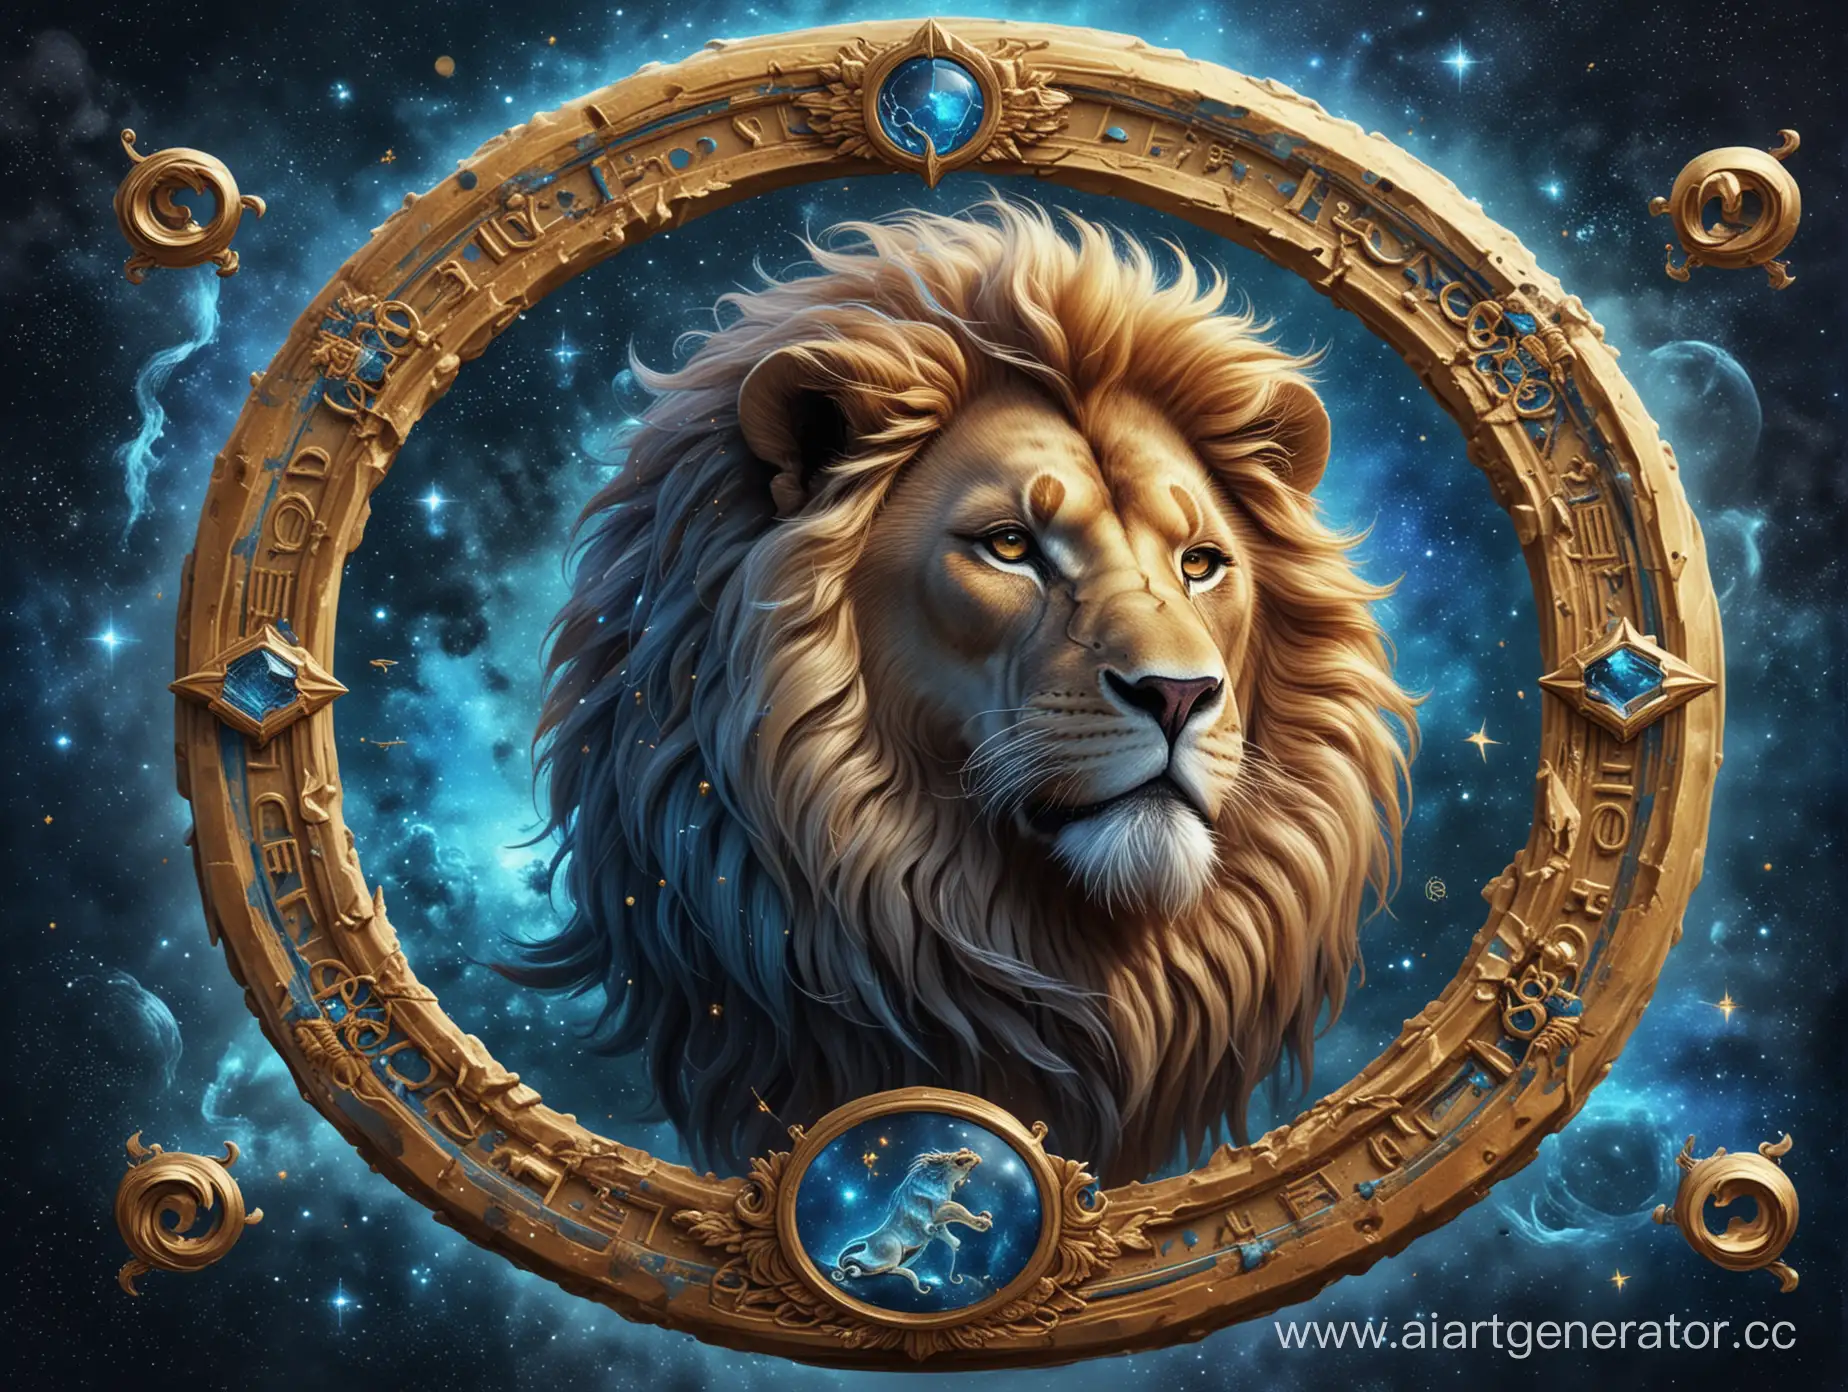 знак зодиака лев, в реалистичном стиле с деталями и в доминирующем виде. за днем фоне должно быть космическая дымка в синем цвете цвете, вокруг льва должна быть золотая круглая рамка с иероглифами